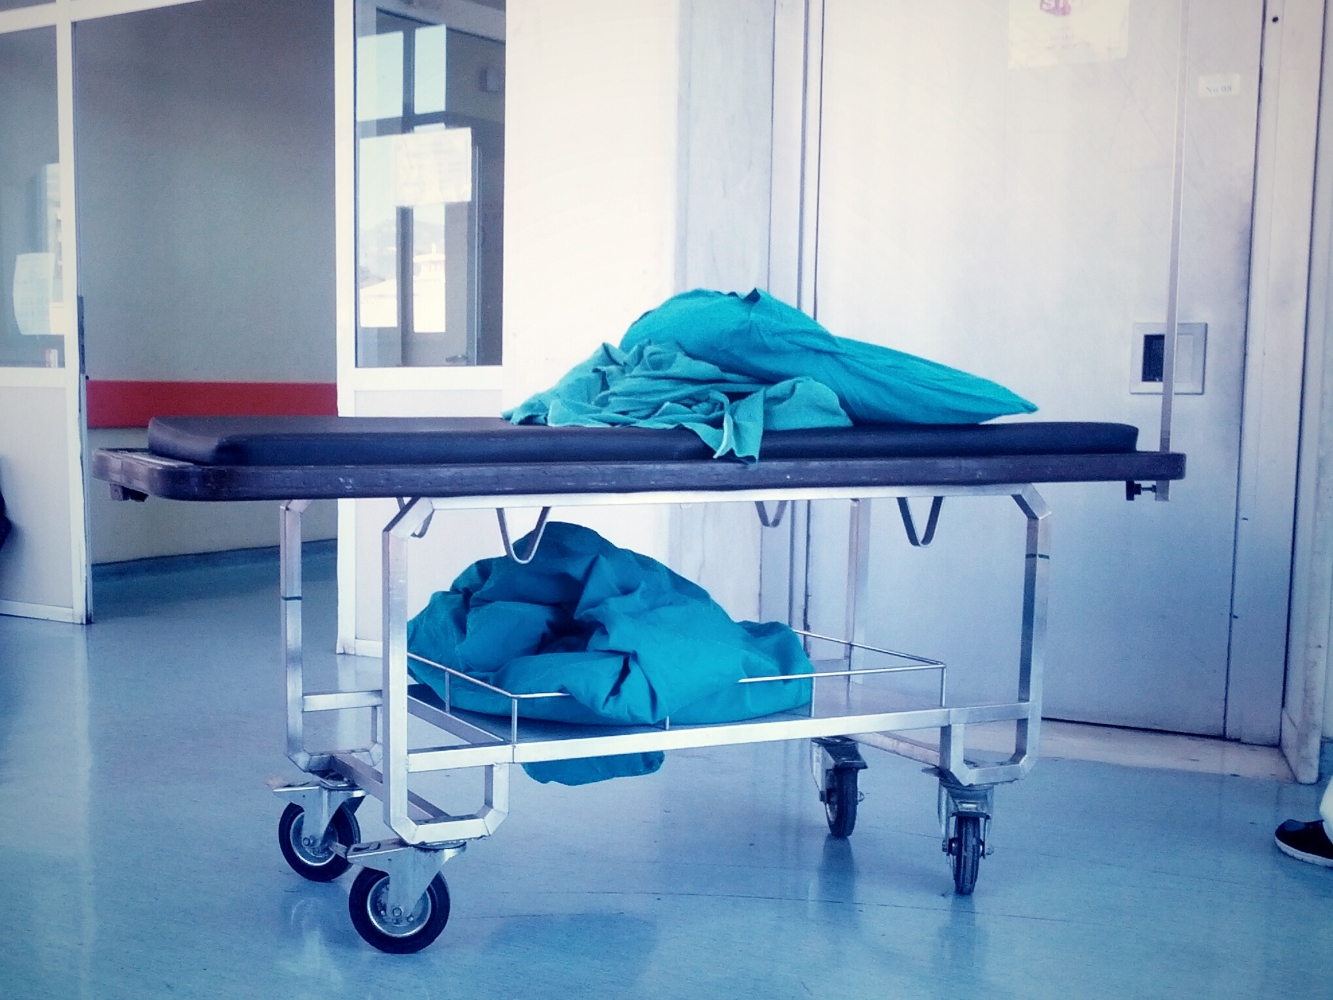 Κρήτη: Στο ΠΑΓΝΗ αναβάλλονται χειρουργεία ακόμη και σε ασθενείς με 2-3 μήνες ζωής, λόγω ελλείψεων